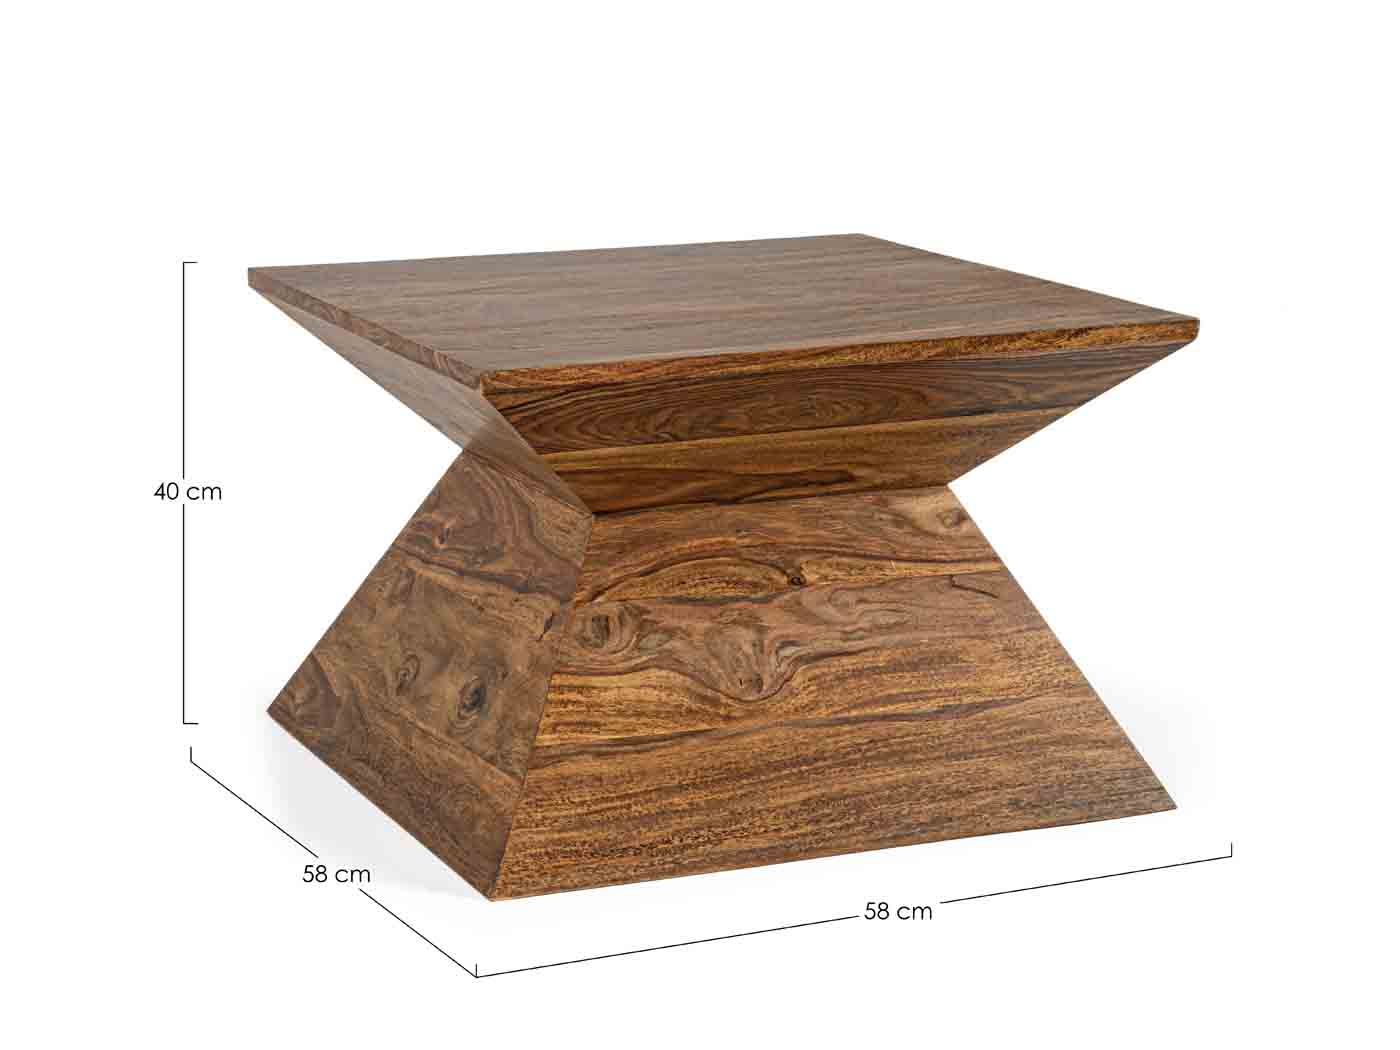 Der Beistelltisch Egypt überzeugt mit seiner besonderen und ausgefallen Form. Gefertigt wurde der Tisch aus Sheesham Holz, welches lackiert wurde.